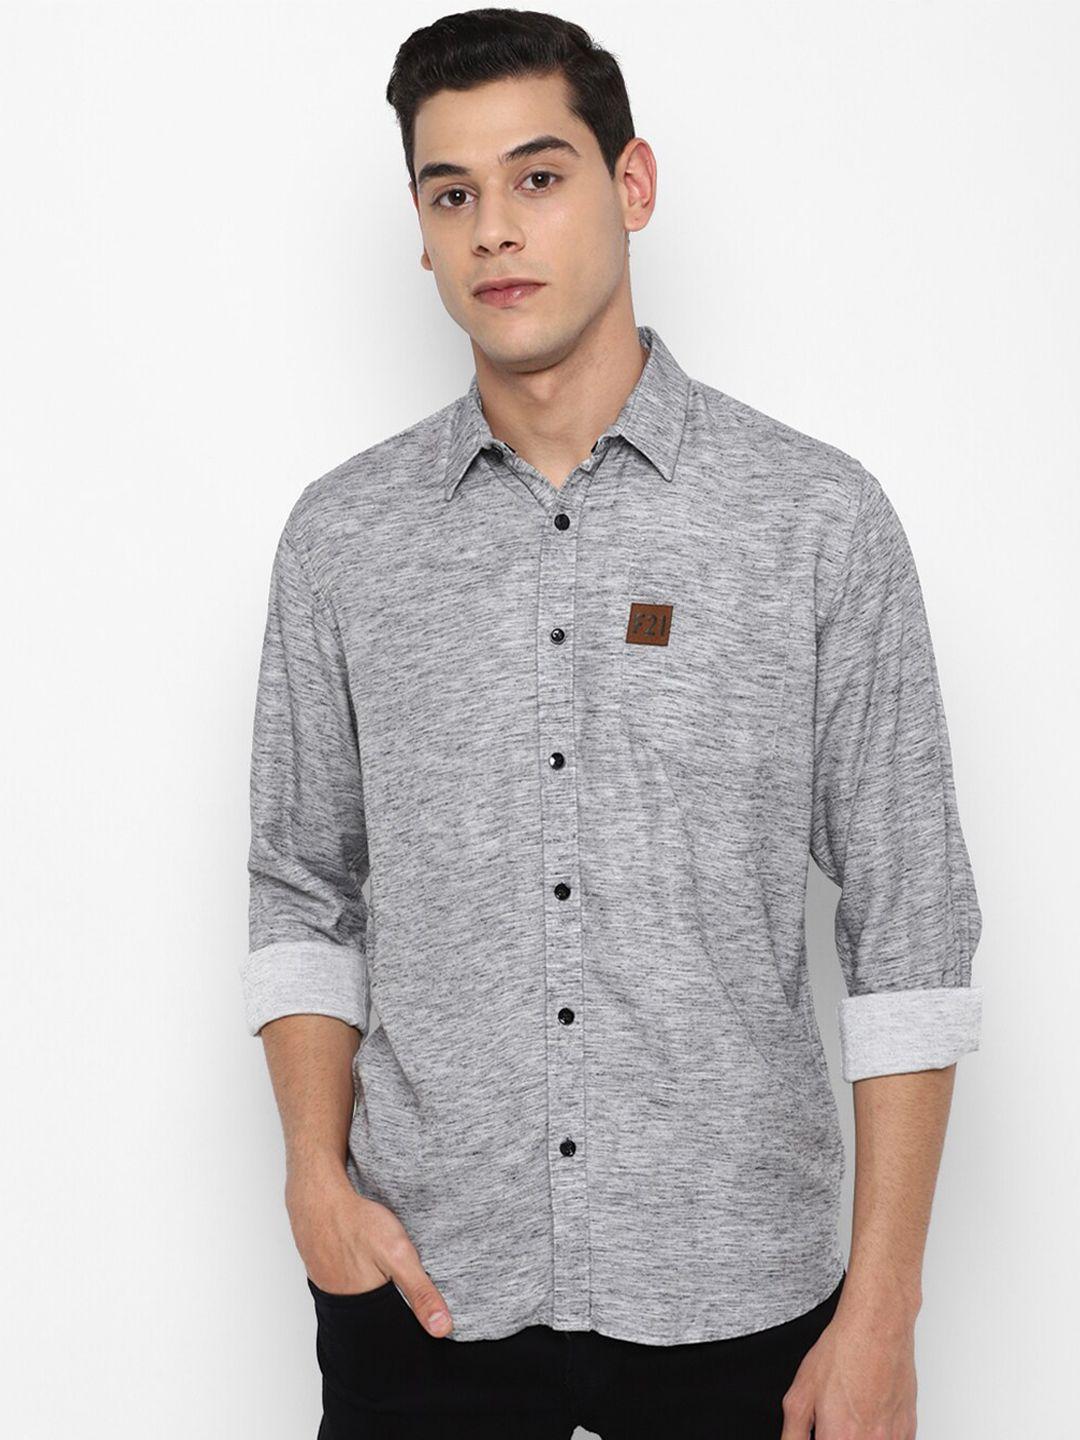 forever-21-men-grey-melange-solid-regular-fit-cotton-casual-shirt